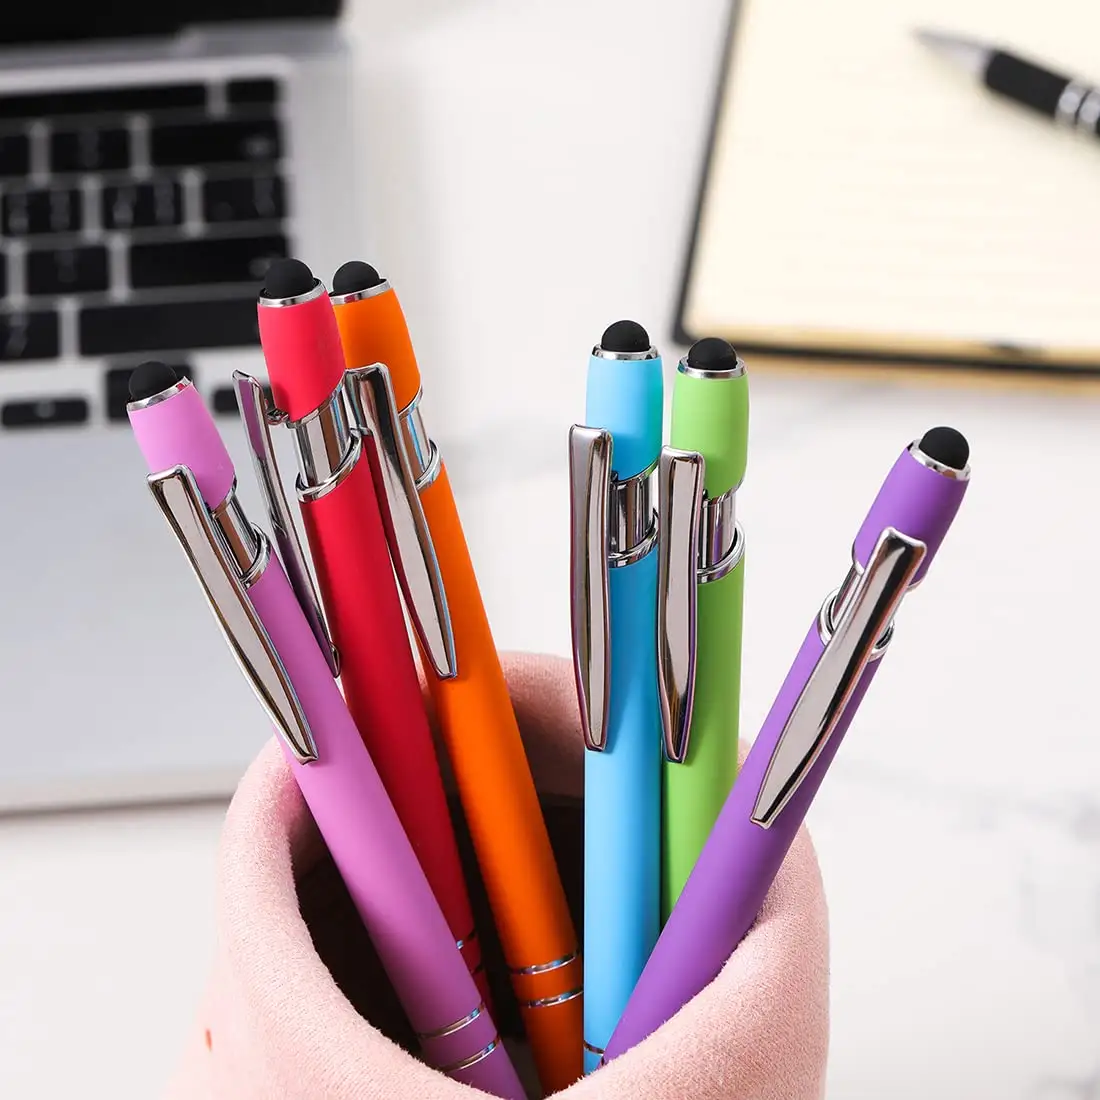 고품질 럭셔리 볼펜 잉크 펜 선물 프로모션 프레스 스타일 터치 여러 가지 빛깔의 금속 볼펜